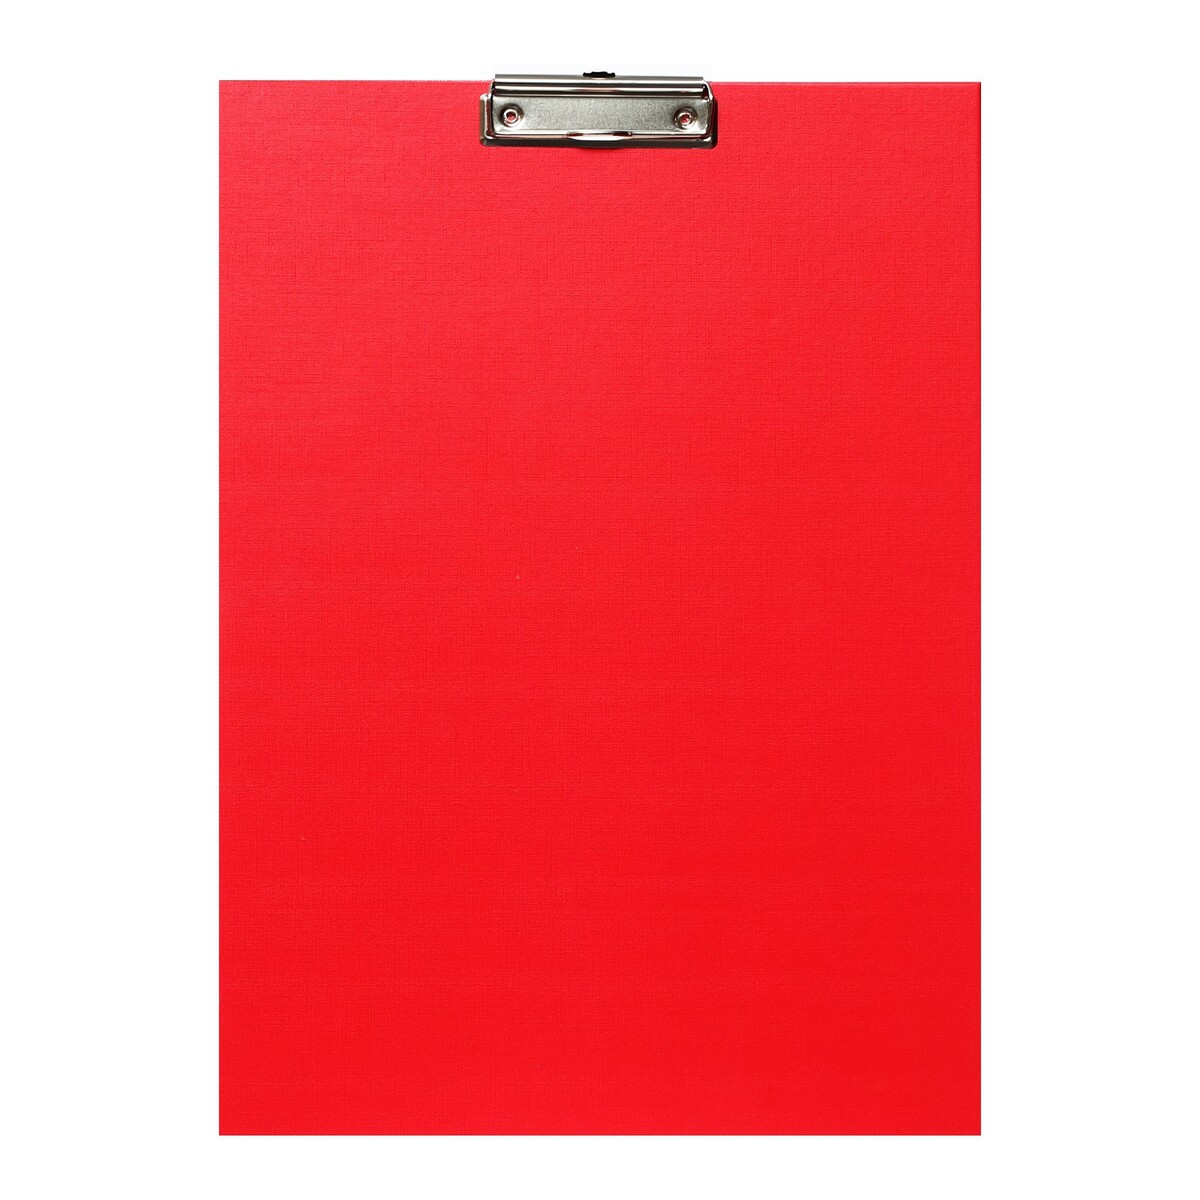 Планшет с зажимом а3, 420 x 320 мм, покрыт высококачественным бумвинилом, красный (клипборд) планшет с зажимом а5 2 мм calligrata картон бумвинил синий клипборд